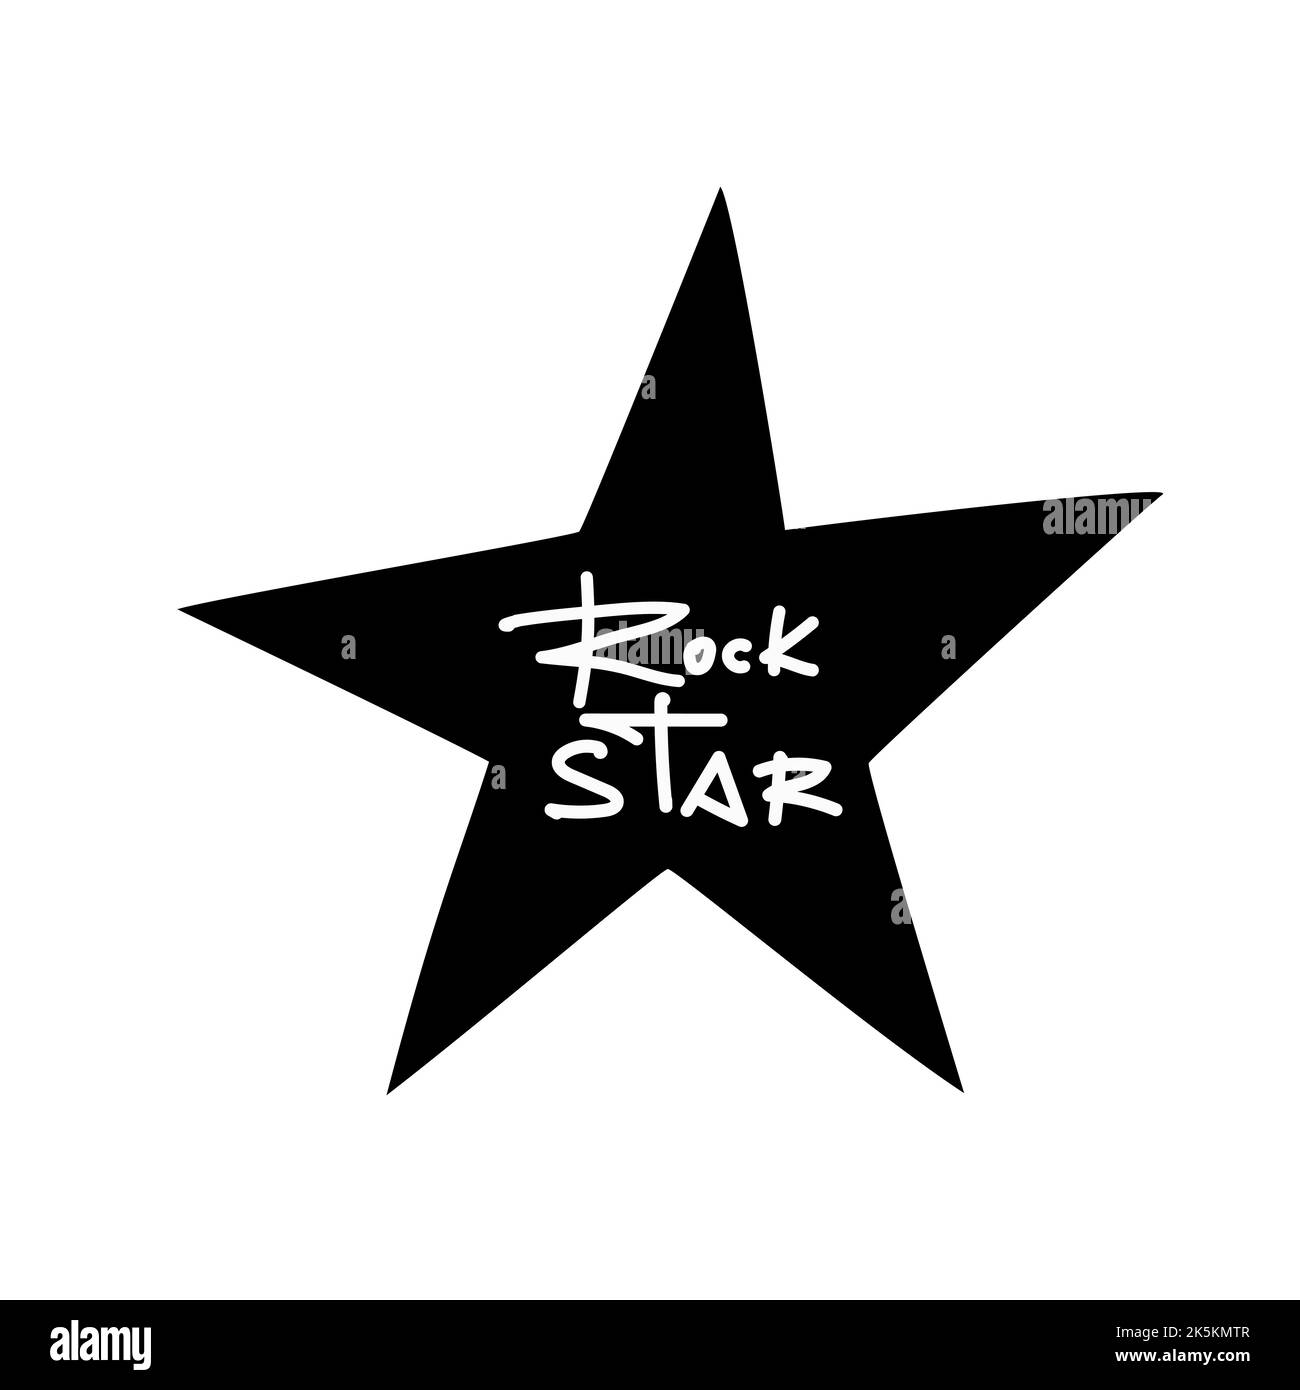 Etichetta graffiti bianca isolata Rock star su una stella nera. Illustrazione vettoriale. Illustrazione Vettoriale